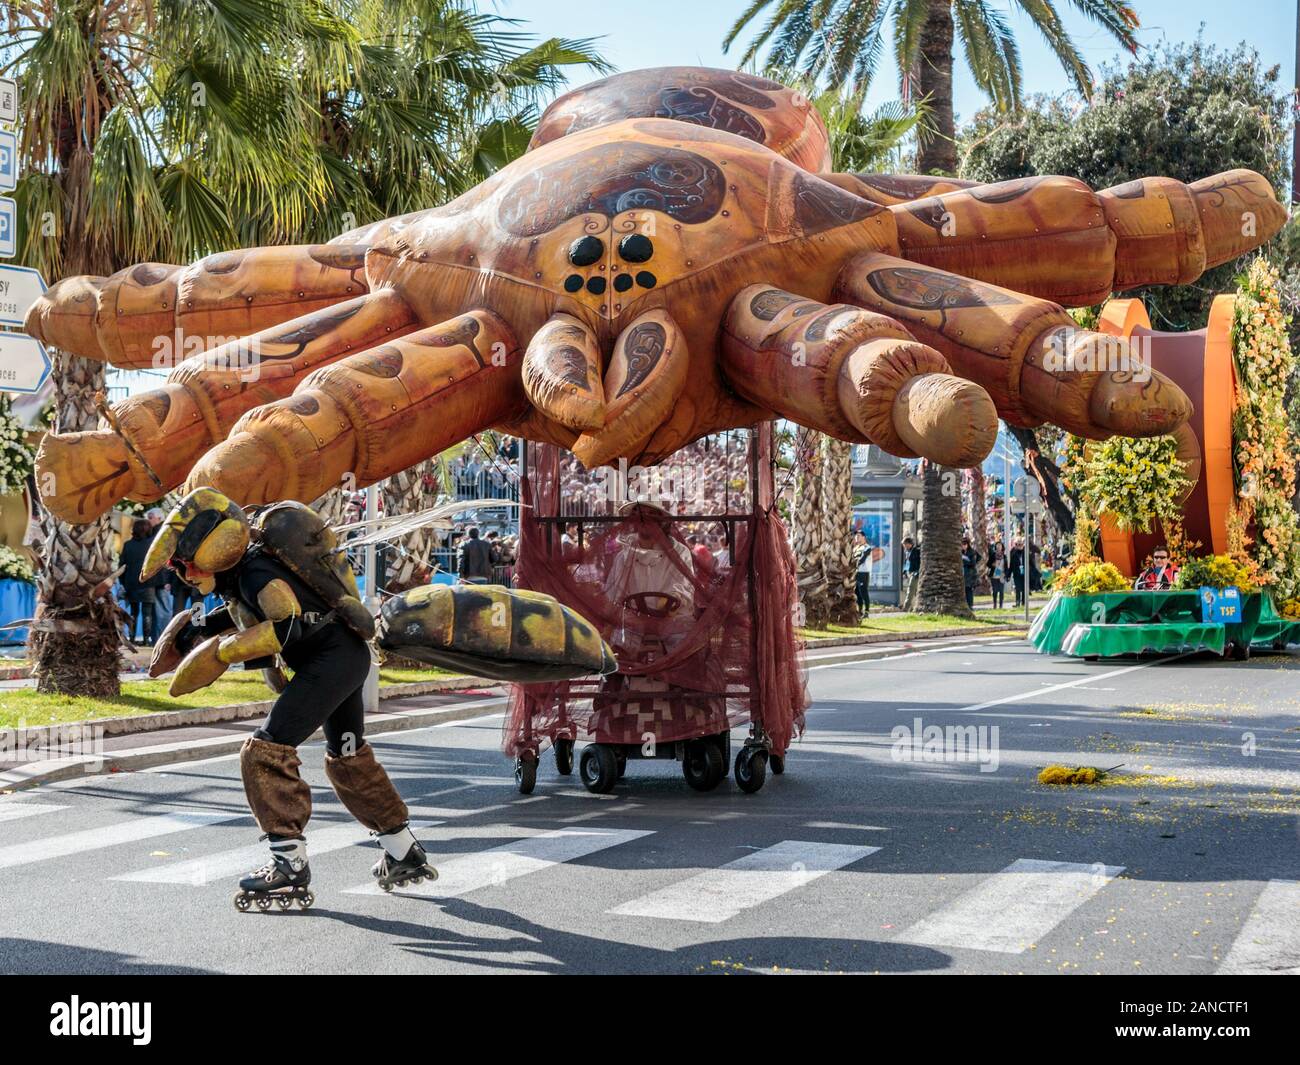 Esecutore vestito come un ape che tira un pallone ragno gigante alla parata dei fiori, Carnevale di Nizza, Costa Azzurra, Costa Azzurra, Francia. Foto Stock